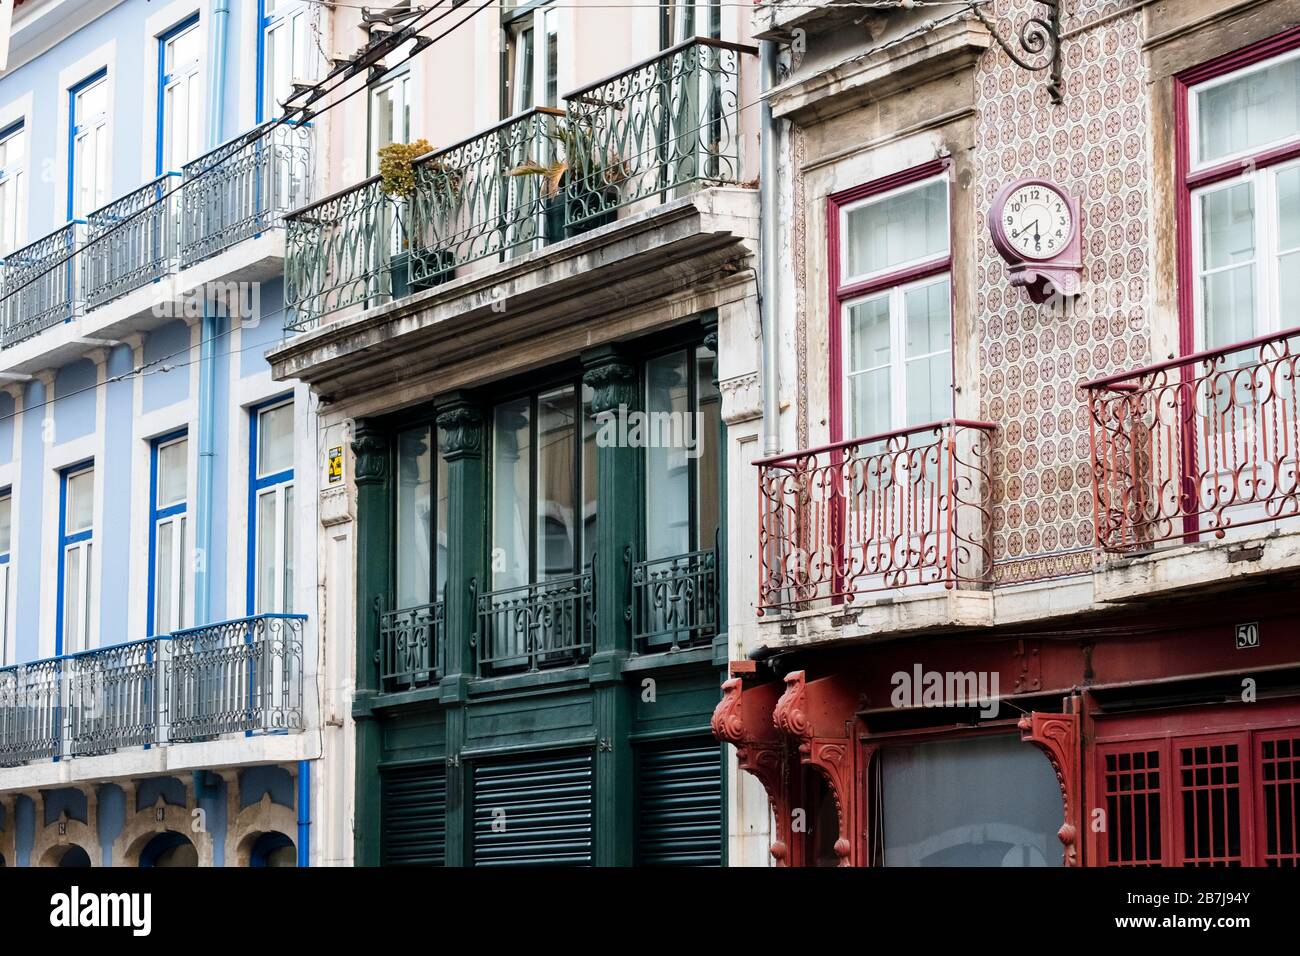 Façades de bâtiments avec tuiles traditionnelles portugaises, Lisbonne Banque D'Images